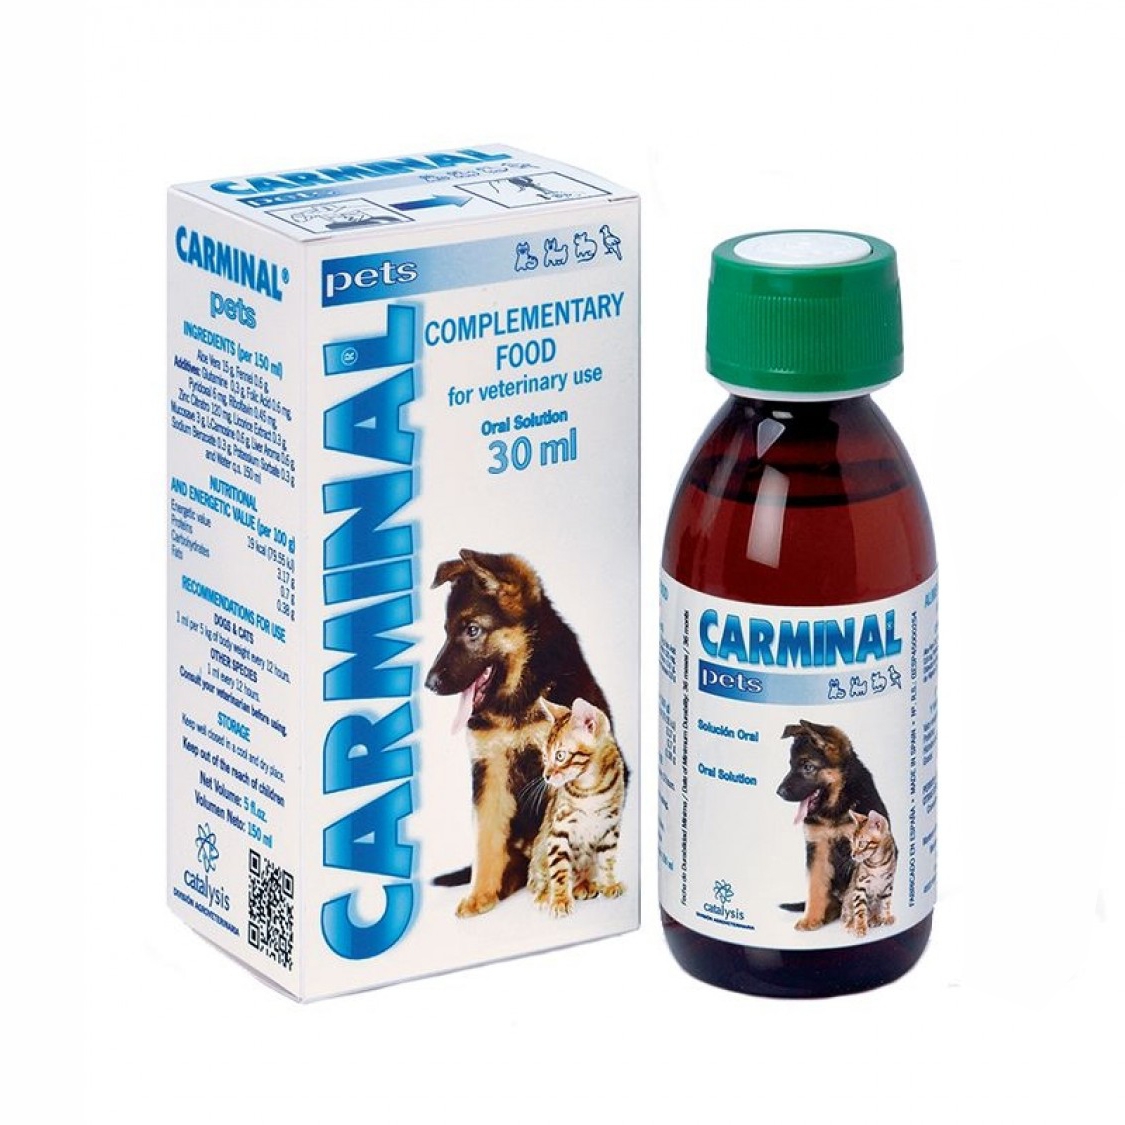 Carminal Pets, 30 ml Catalysis imagine 2022